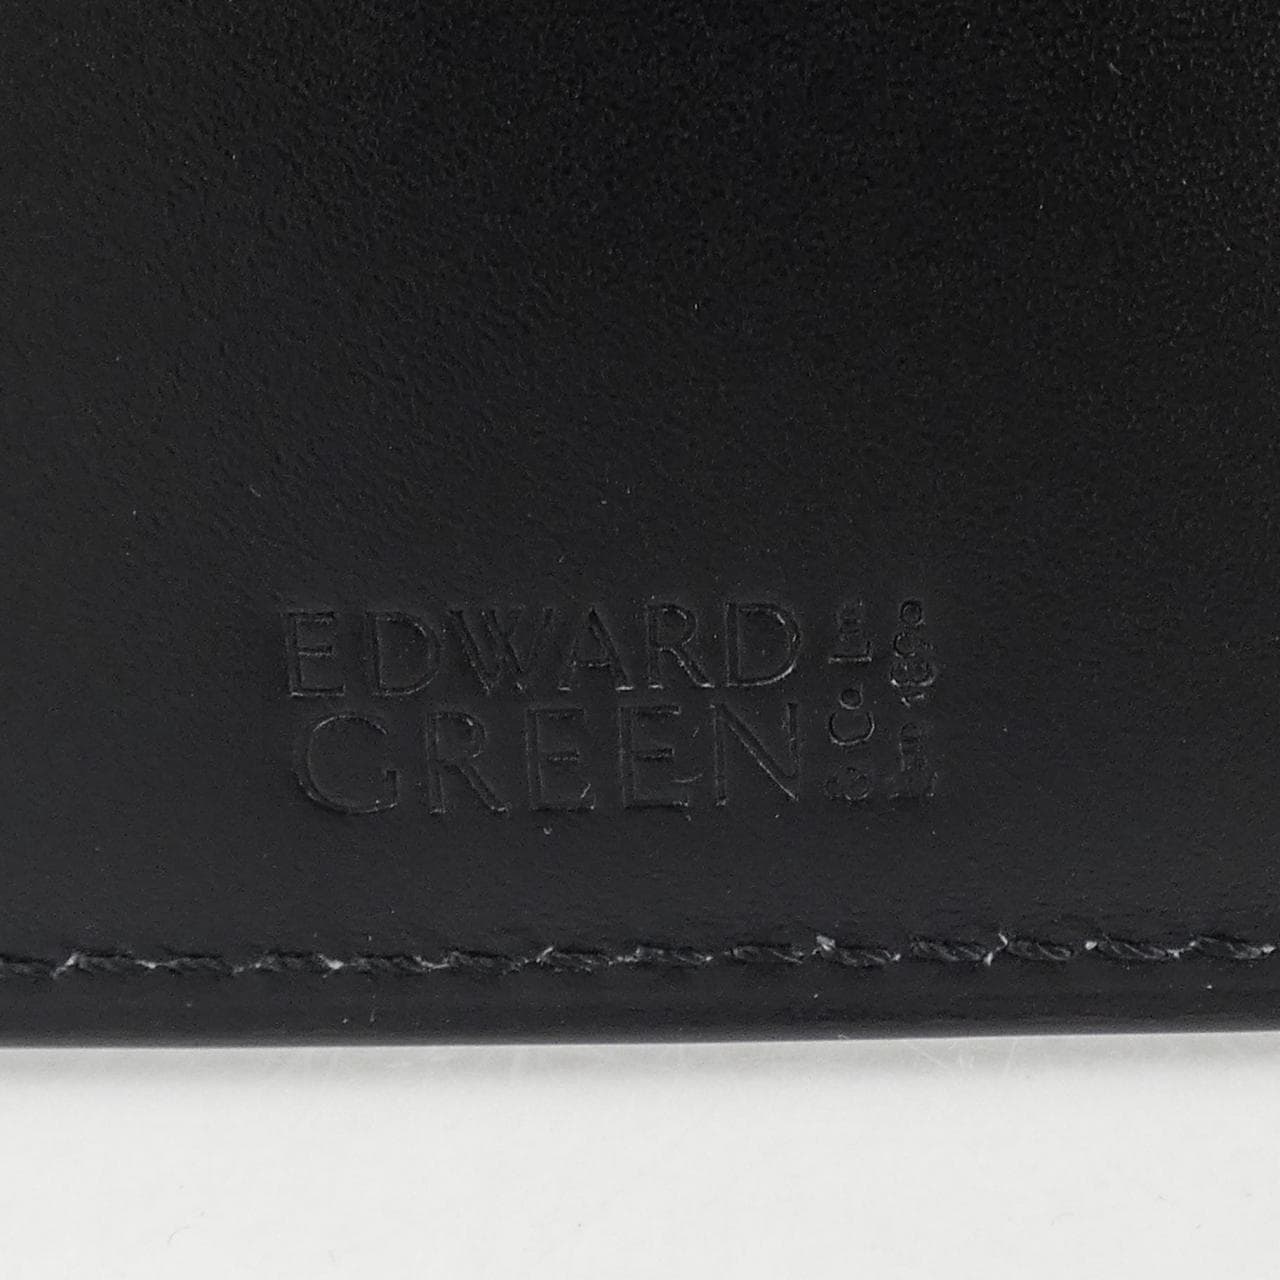 エドワードグリーン EDWARD GREEN CARD CASE